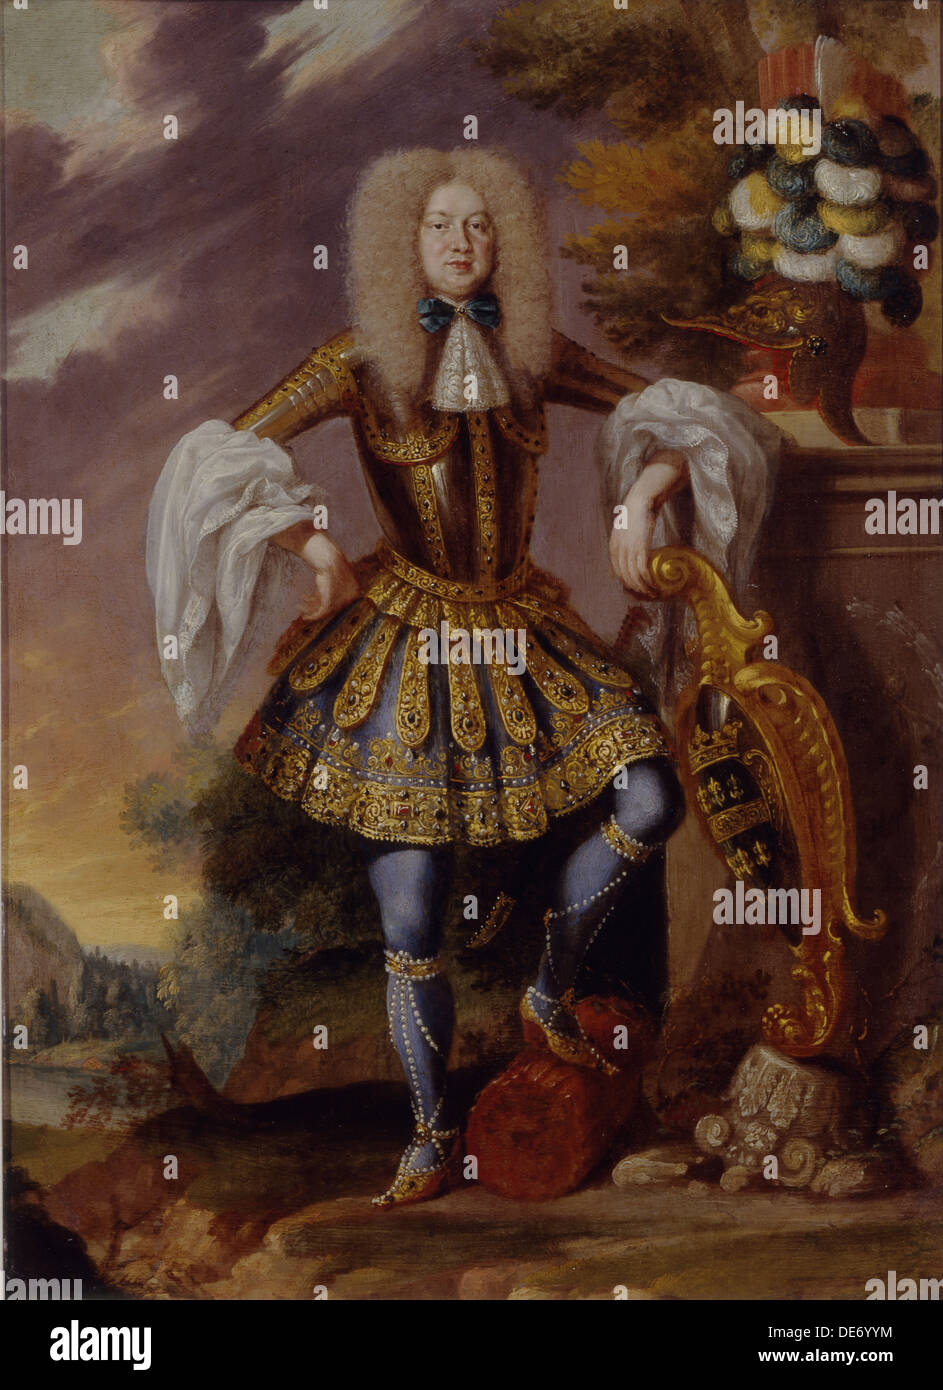 A Man in Fancy Dress, Early 18th cen.. Artist: German master Stock Photo